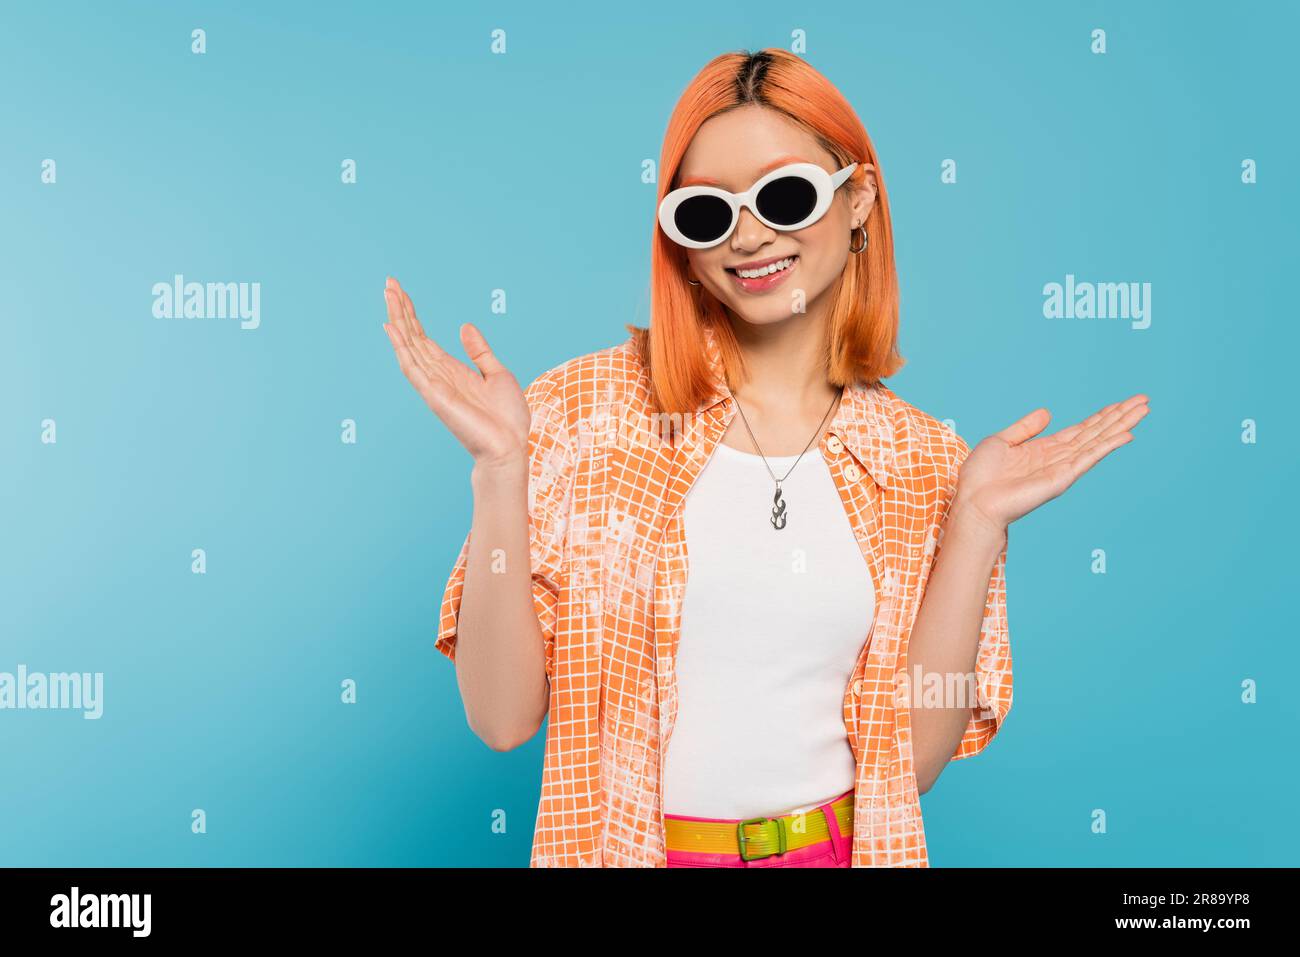 bonheur, jeune femme asiatique avec des cheveux teints debout dans une tenue décontractée et des lunettes de soleil, gesturant avec les mains sur fond bleu vif, chemise orange, n Banque D'Images